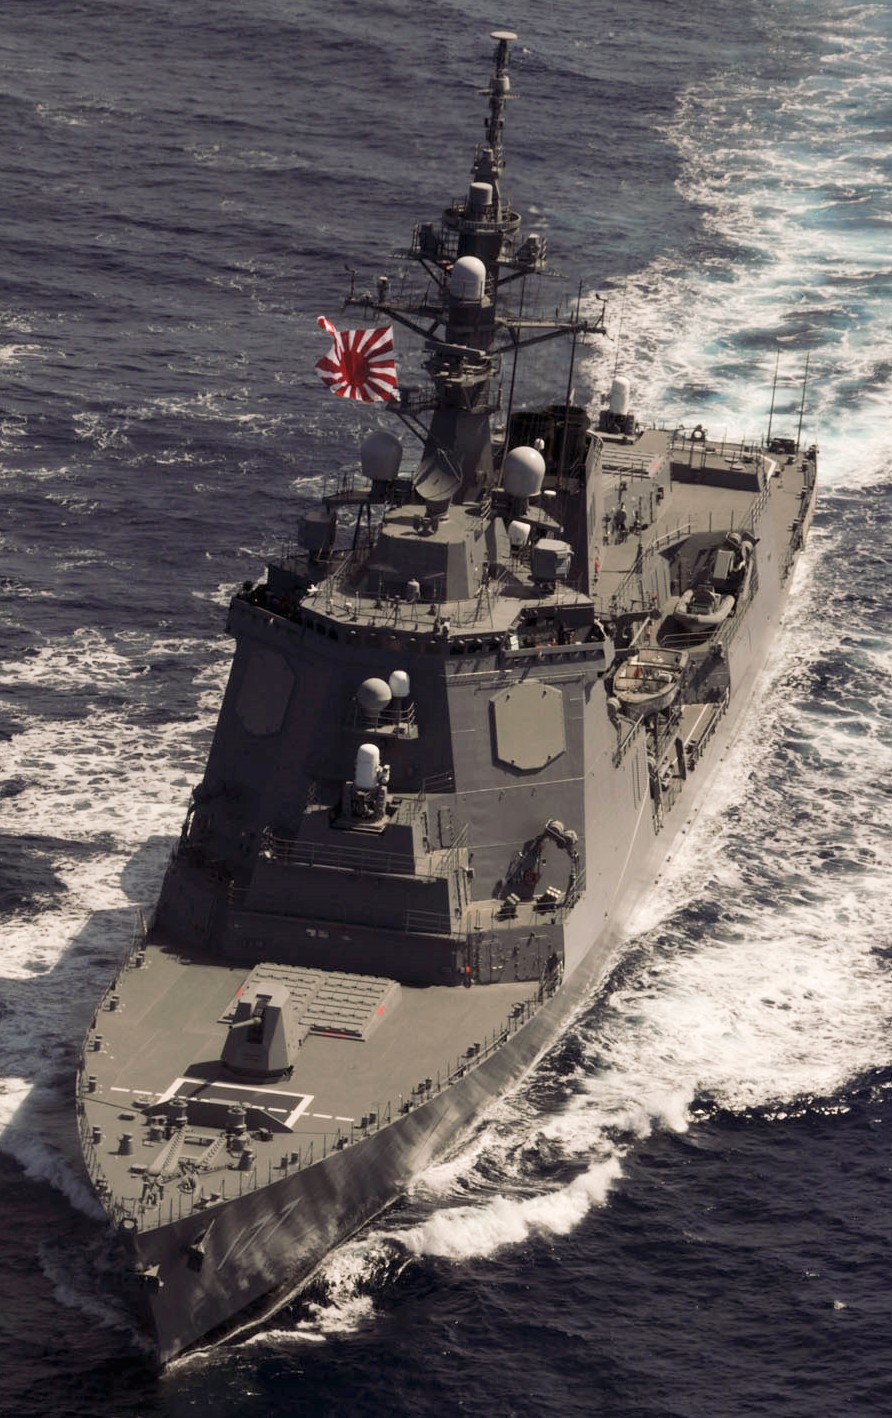 ddg-177 jds atago guided missile destroyer japan maritime self defense force jmsdf 27